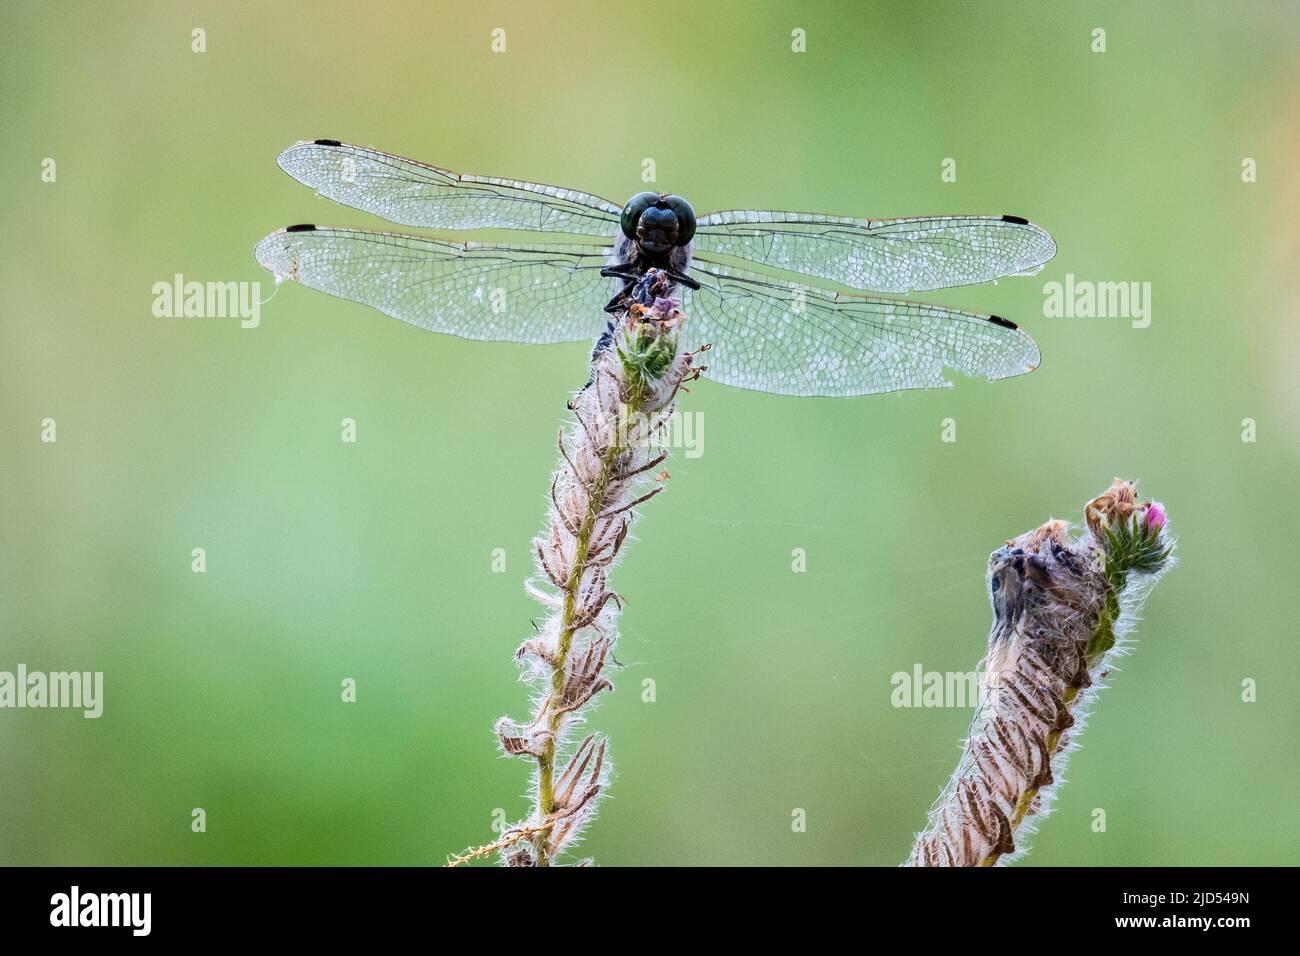 Una libellula è vista appollaiata su una pianta che mostra i suoi occhi composti e le ali trasparenti durante una calda giornata di primavera Foto Stock